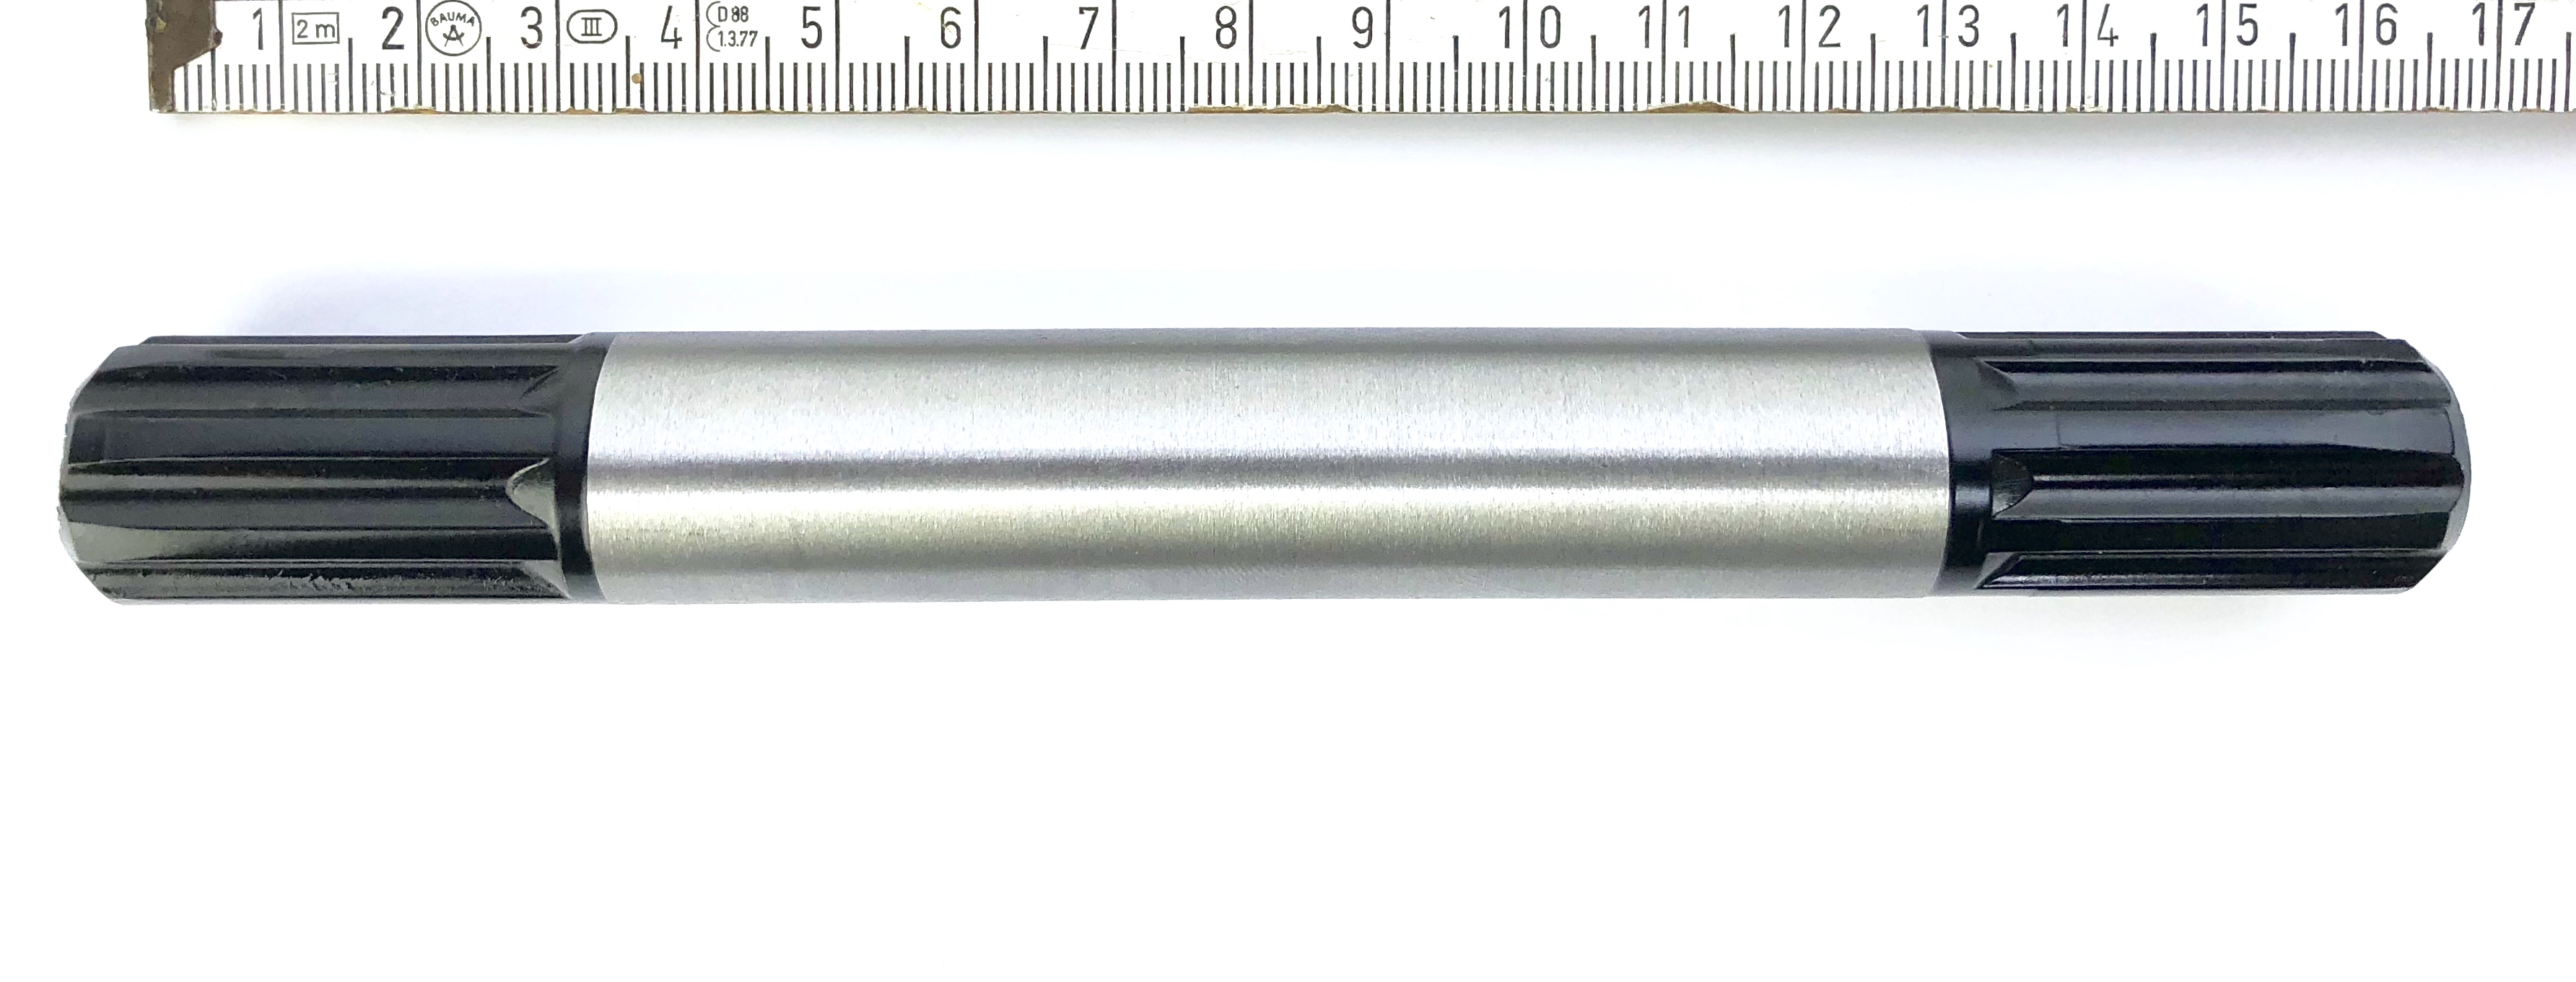 Pièce spéciale:  Axe de pédale 165 mm de large, acier argenté, poli